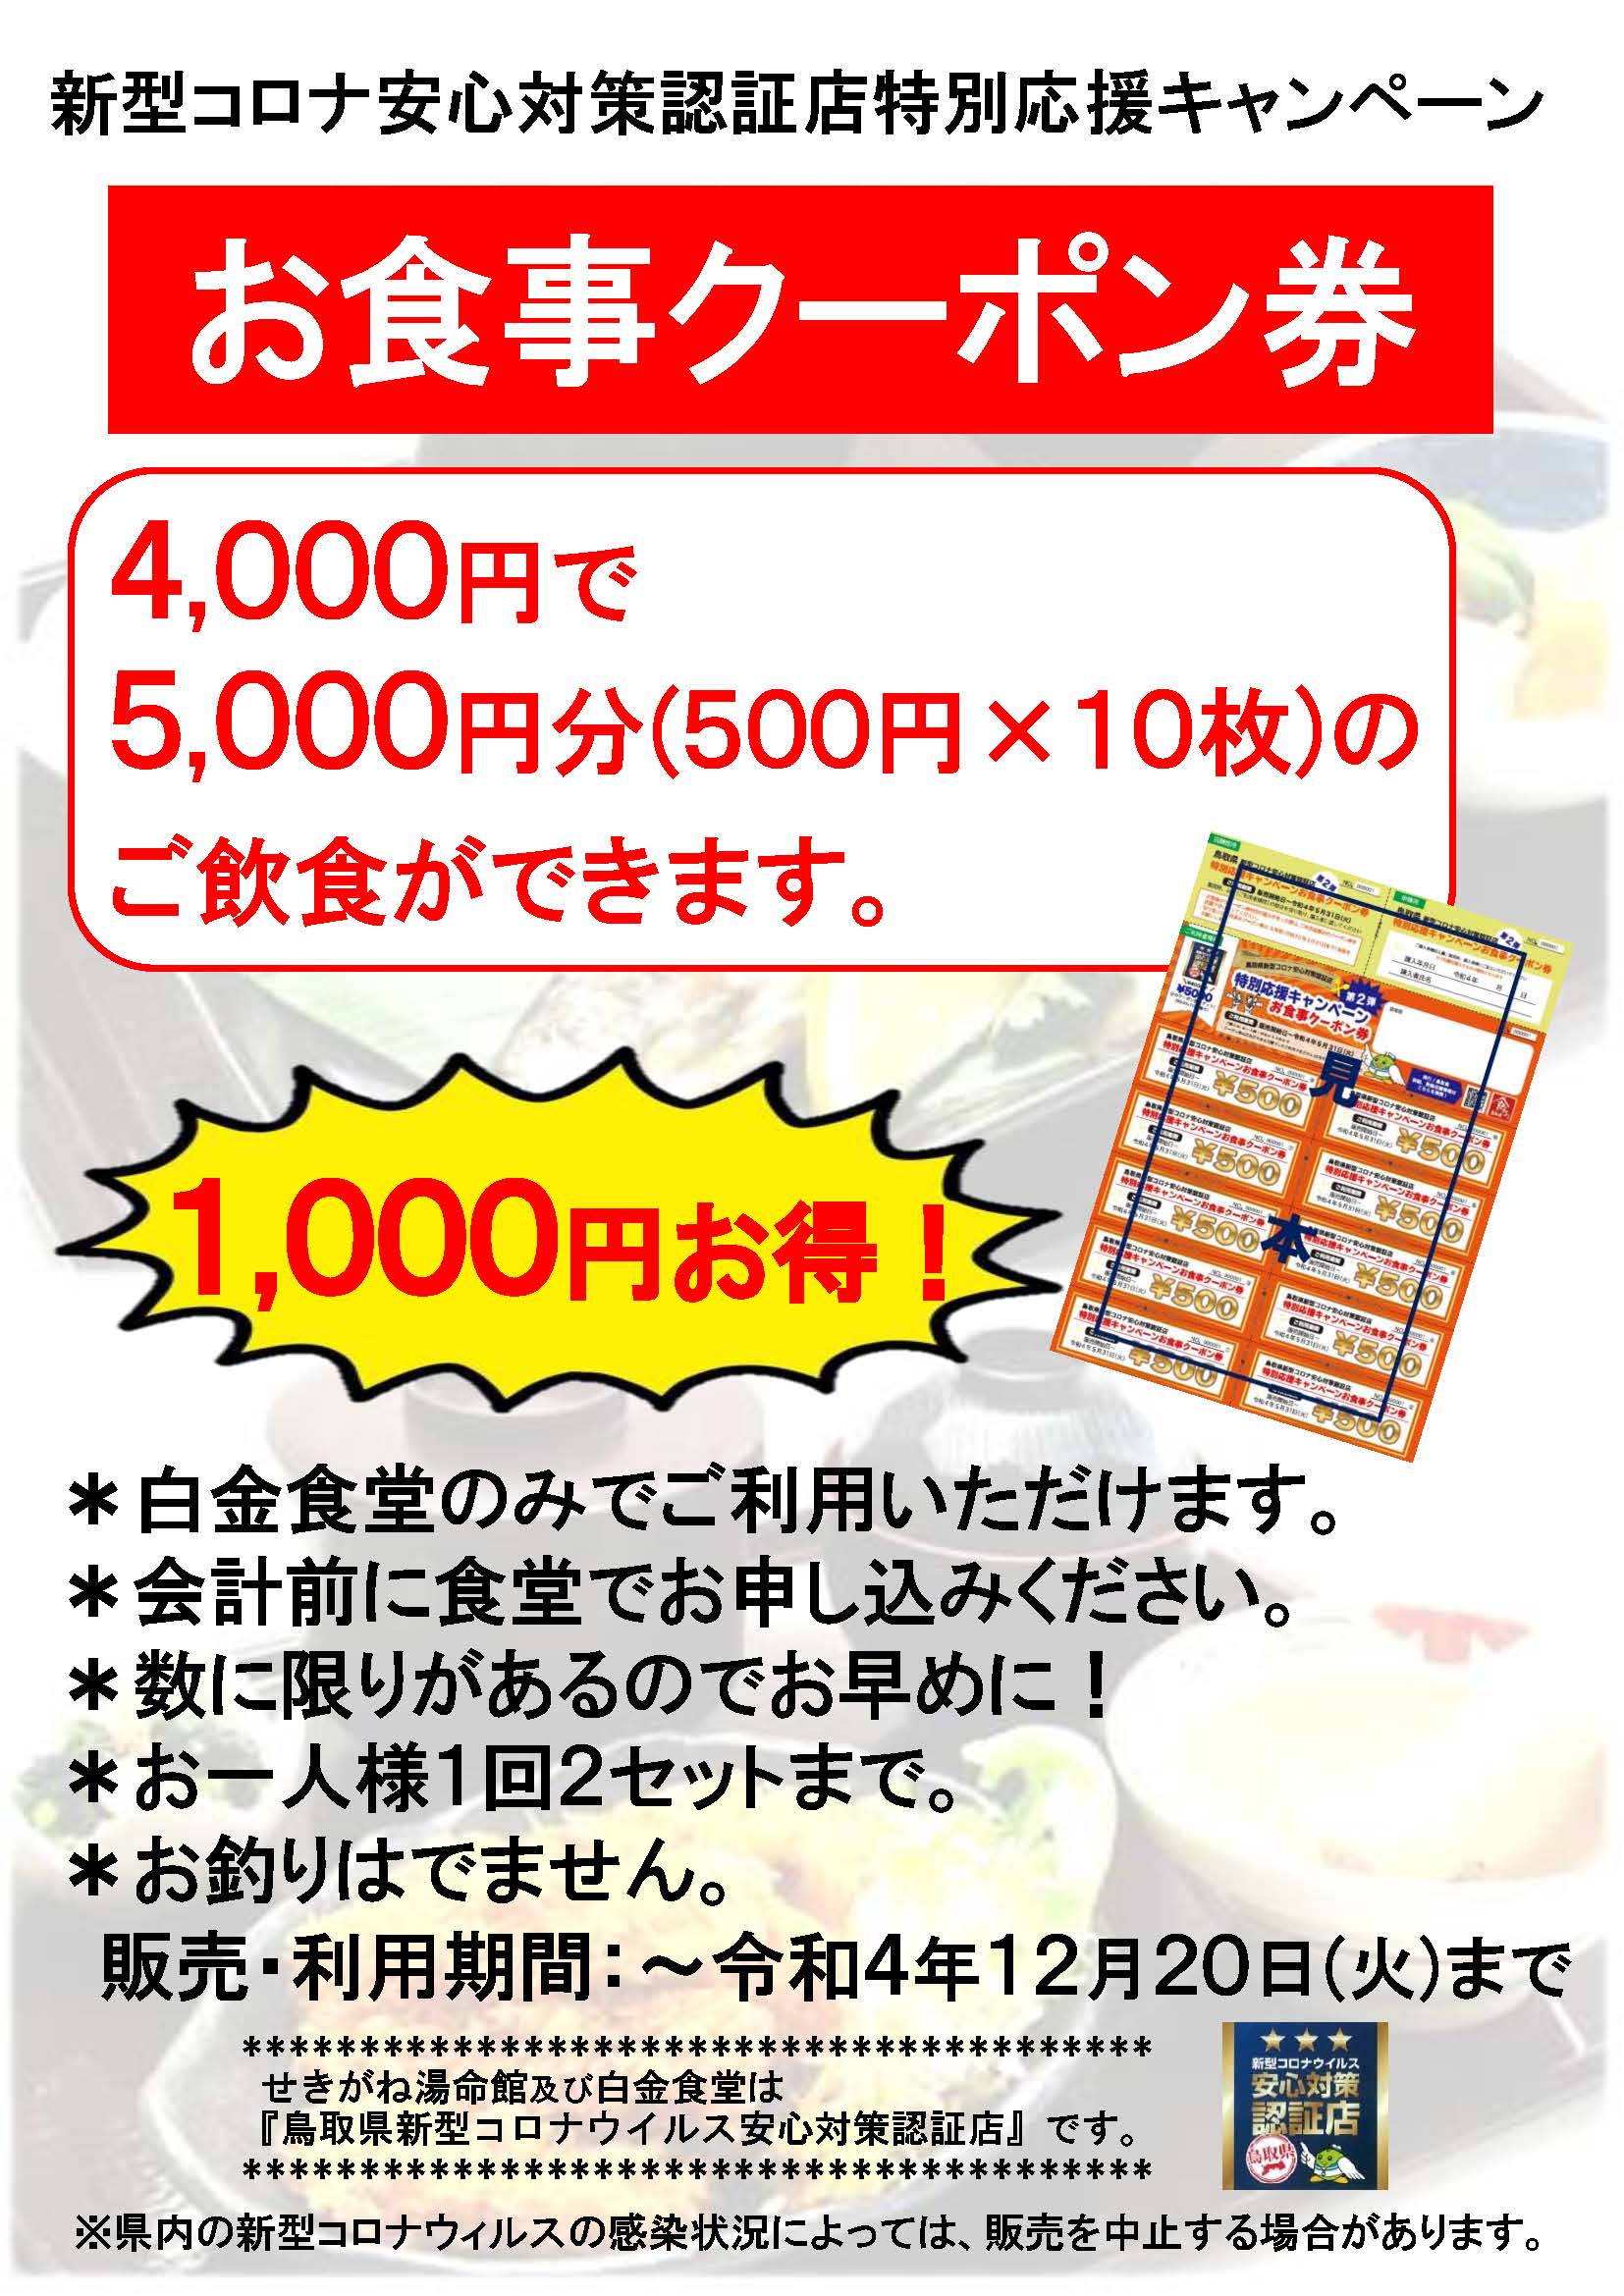 【人気限定SALE】H-Dクーポン券 (45000円相当) ショッピング